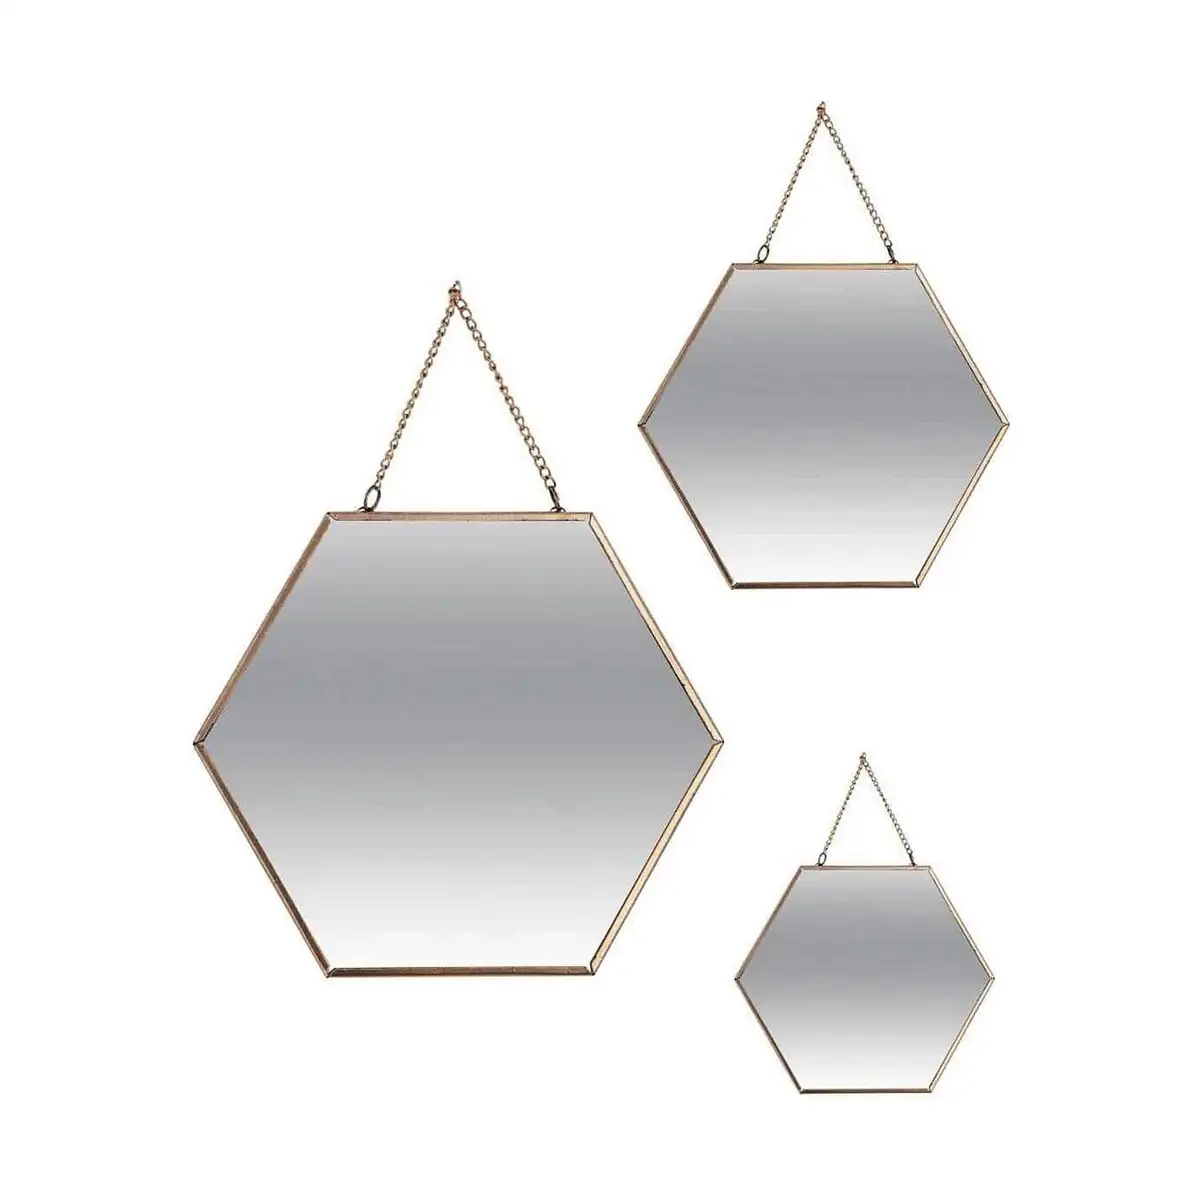 Ensemble de miroirs atmosphera hexagonal dore metal 3 pieces _2229. DIAYTAR SENEGAL - Votre Univers Shopping Éclectique. Explorez nos offres variées et découvrez des articles qui embrassent la diversité et la polyvalence de vos besoins.